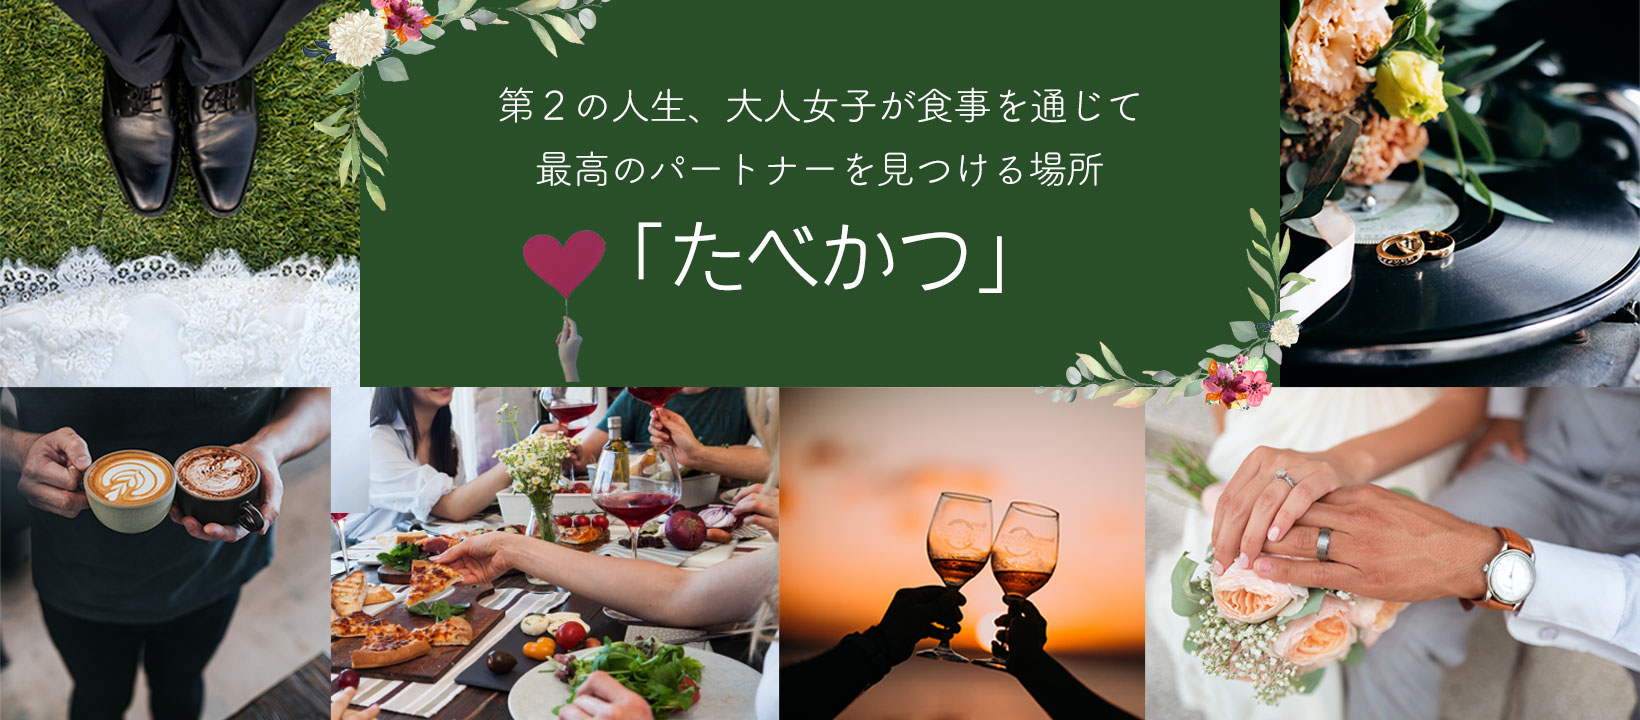 第２の人生、大人女子が食事を通じて最高のパートナーを見つける場所「たべかつ」in 北海道